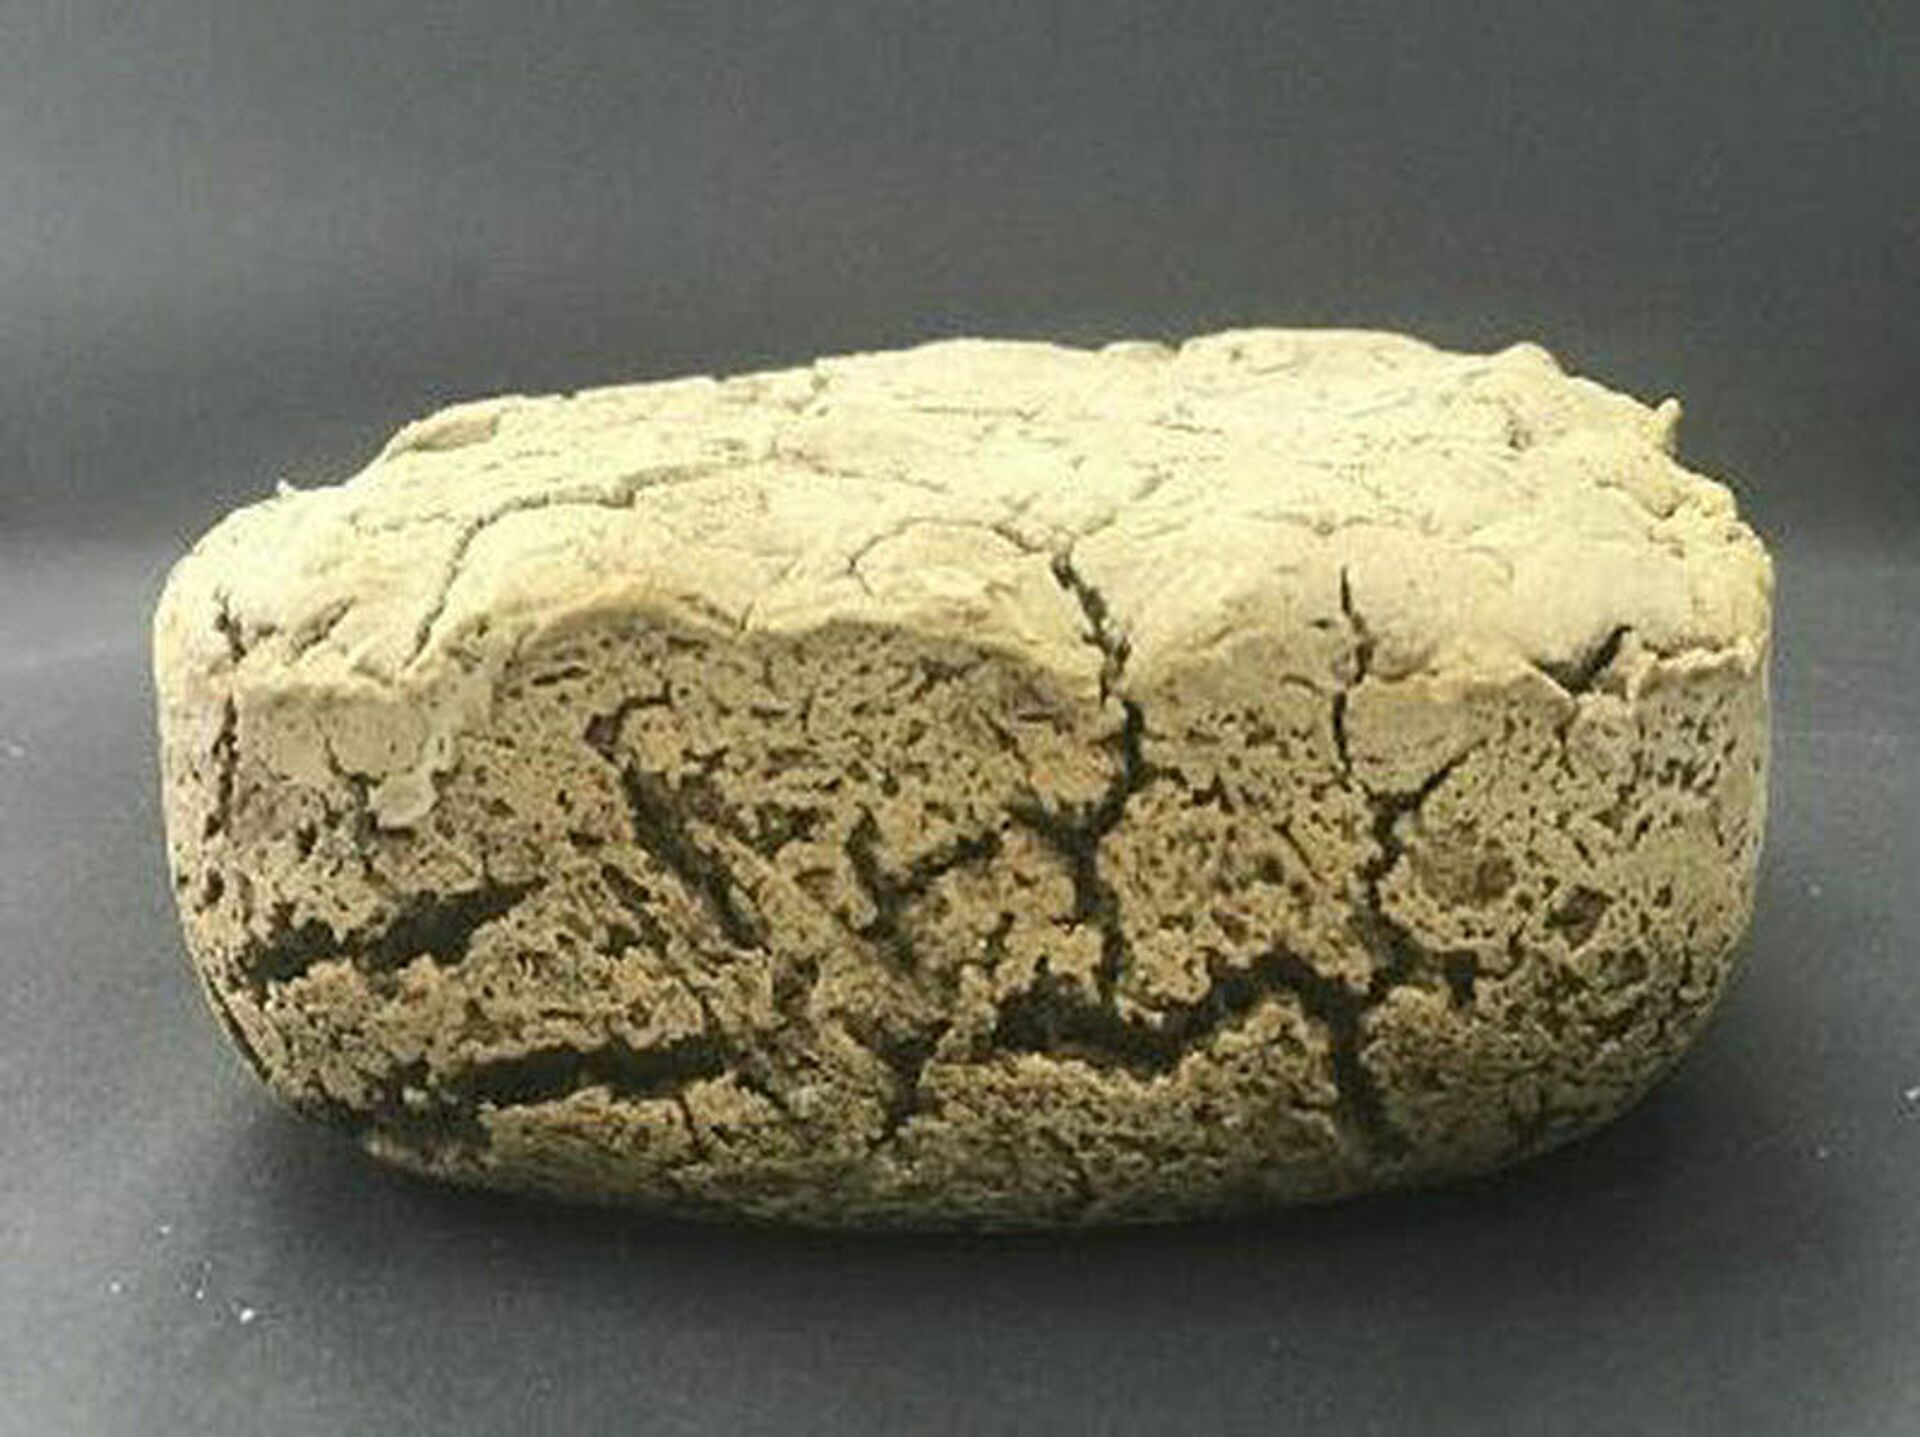 Un pan elaborado con harina de plátano por el investigador Jairo Montoya López - Sputnik Mundo, 1920, 19.02.2021